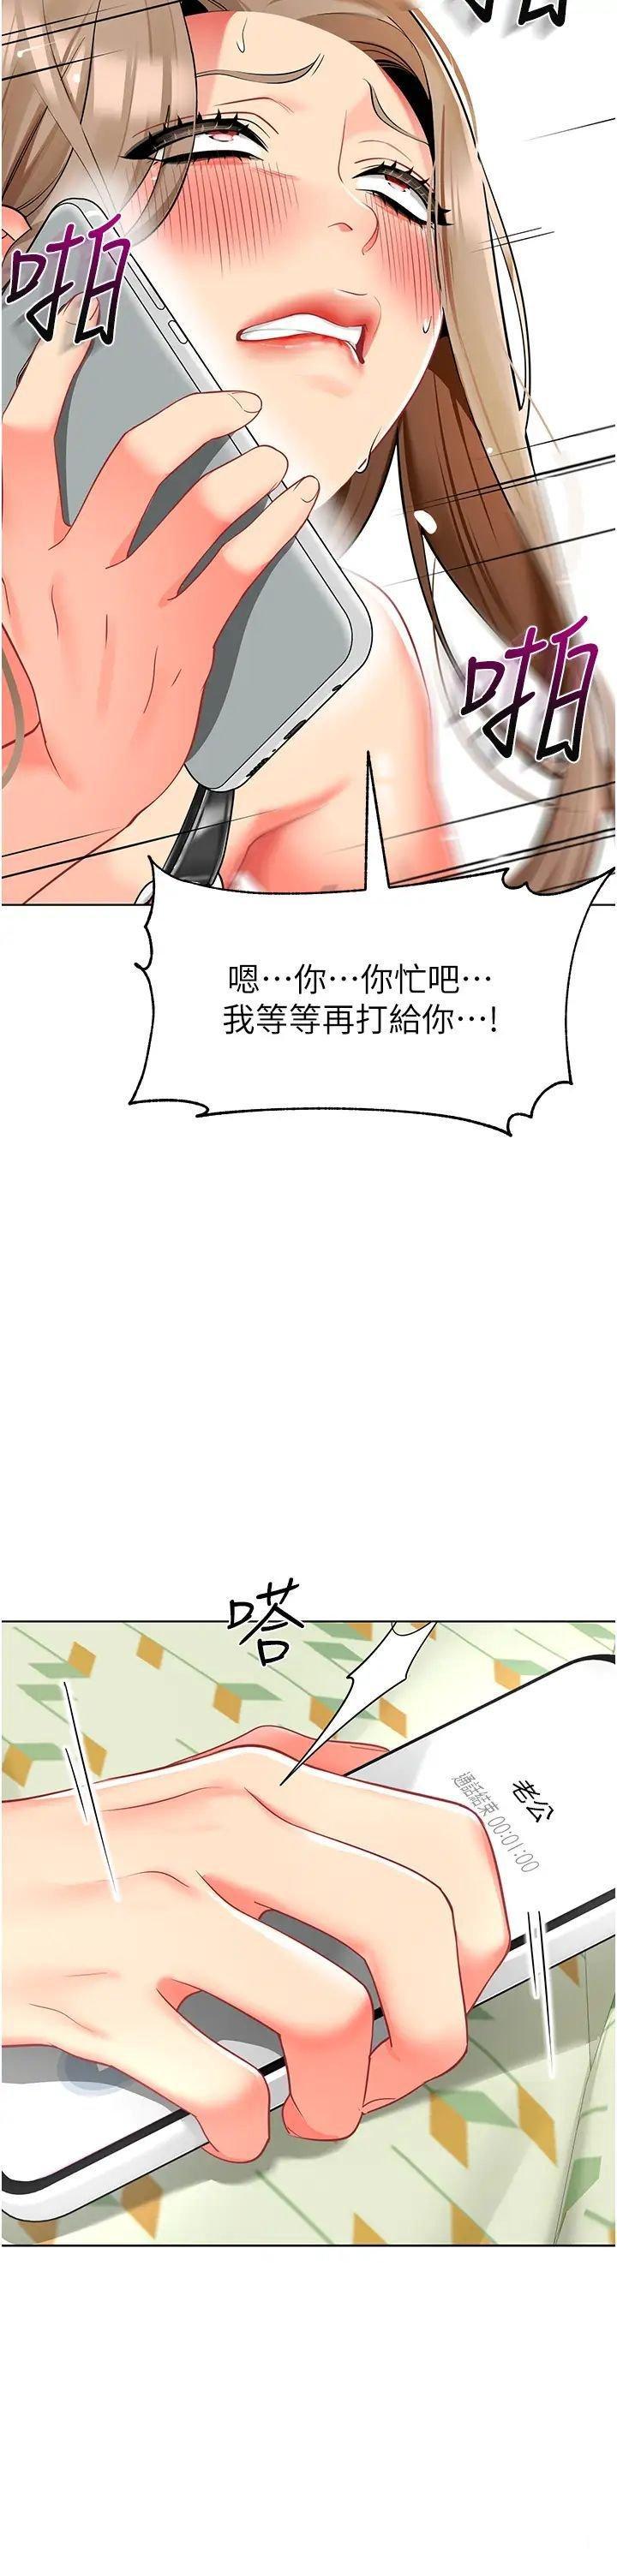 幼儿园老师们  第24话_漆黑影院的淫爪 漫画图片2.jpg